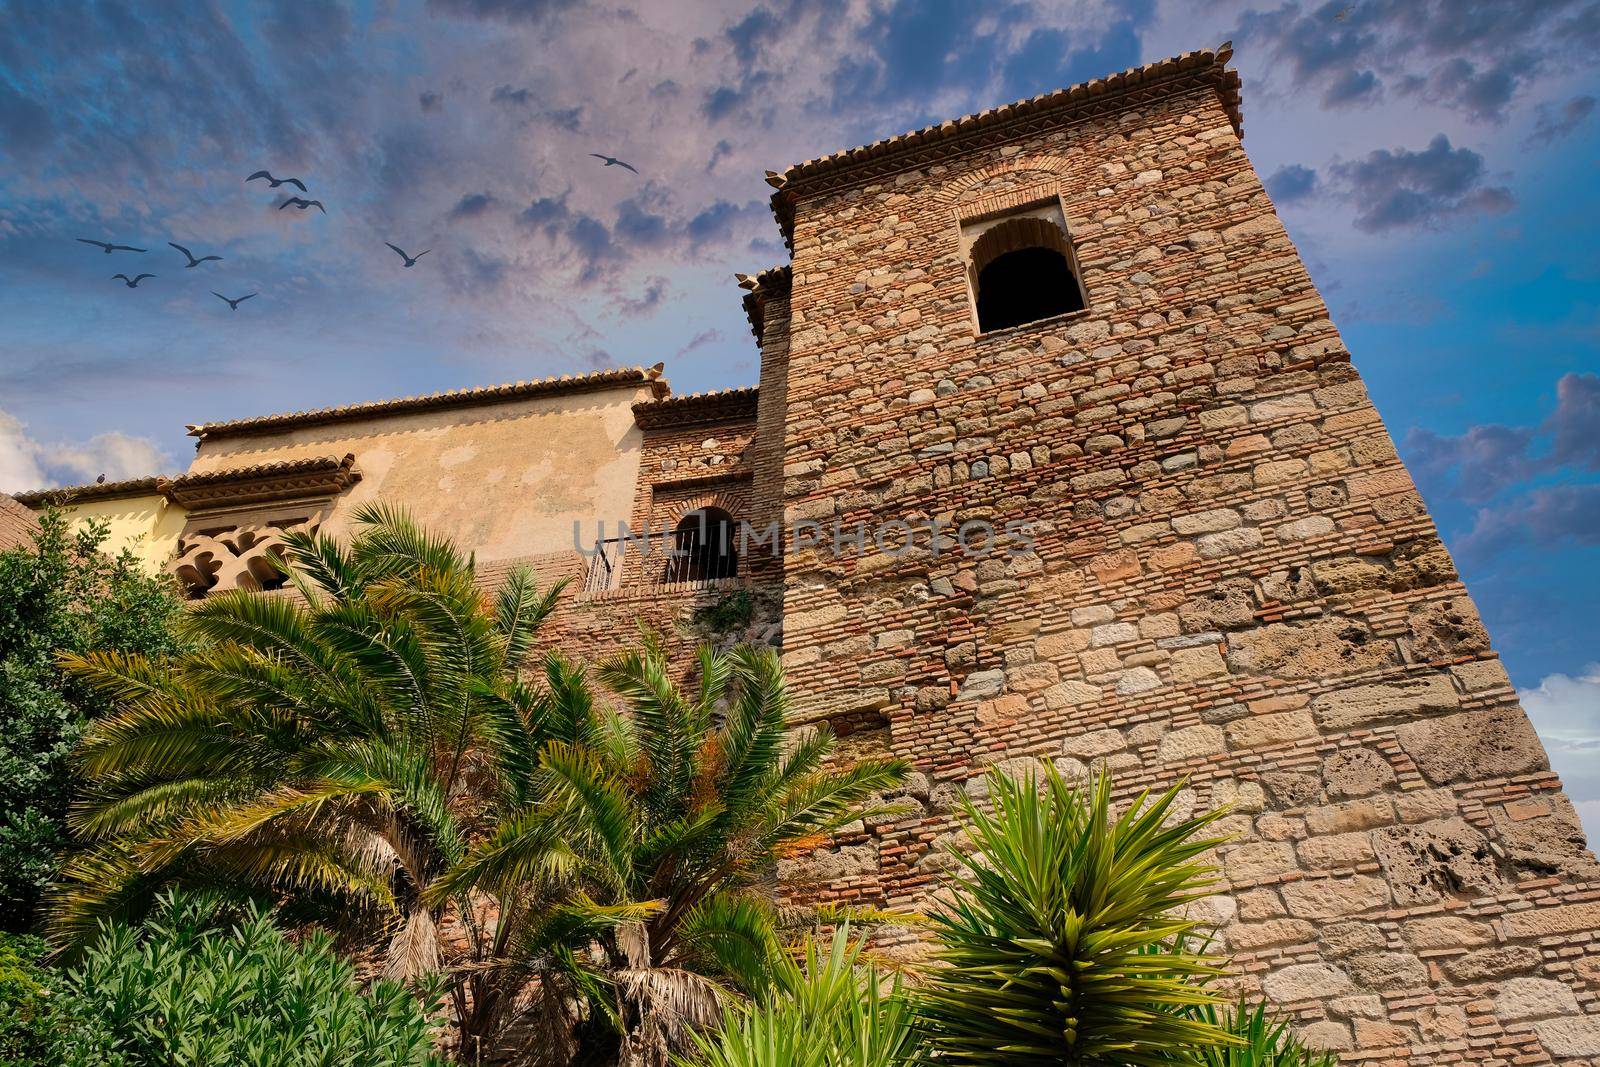 La Alcazaba in Malaga by JCVSTOCK